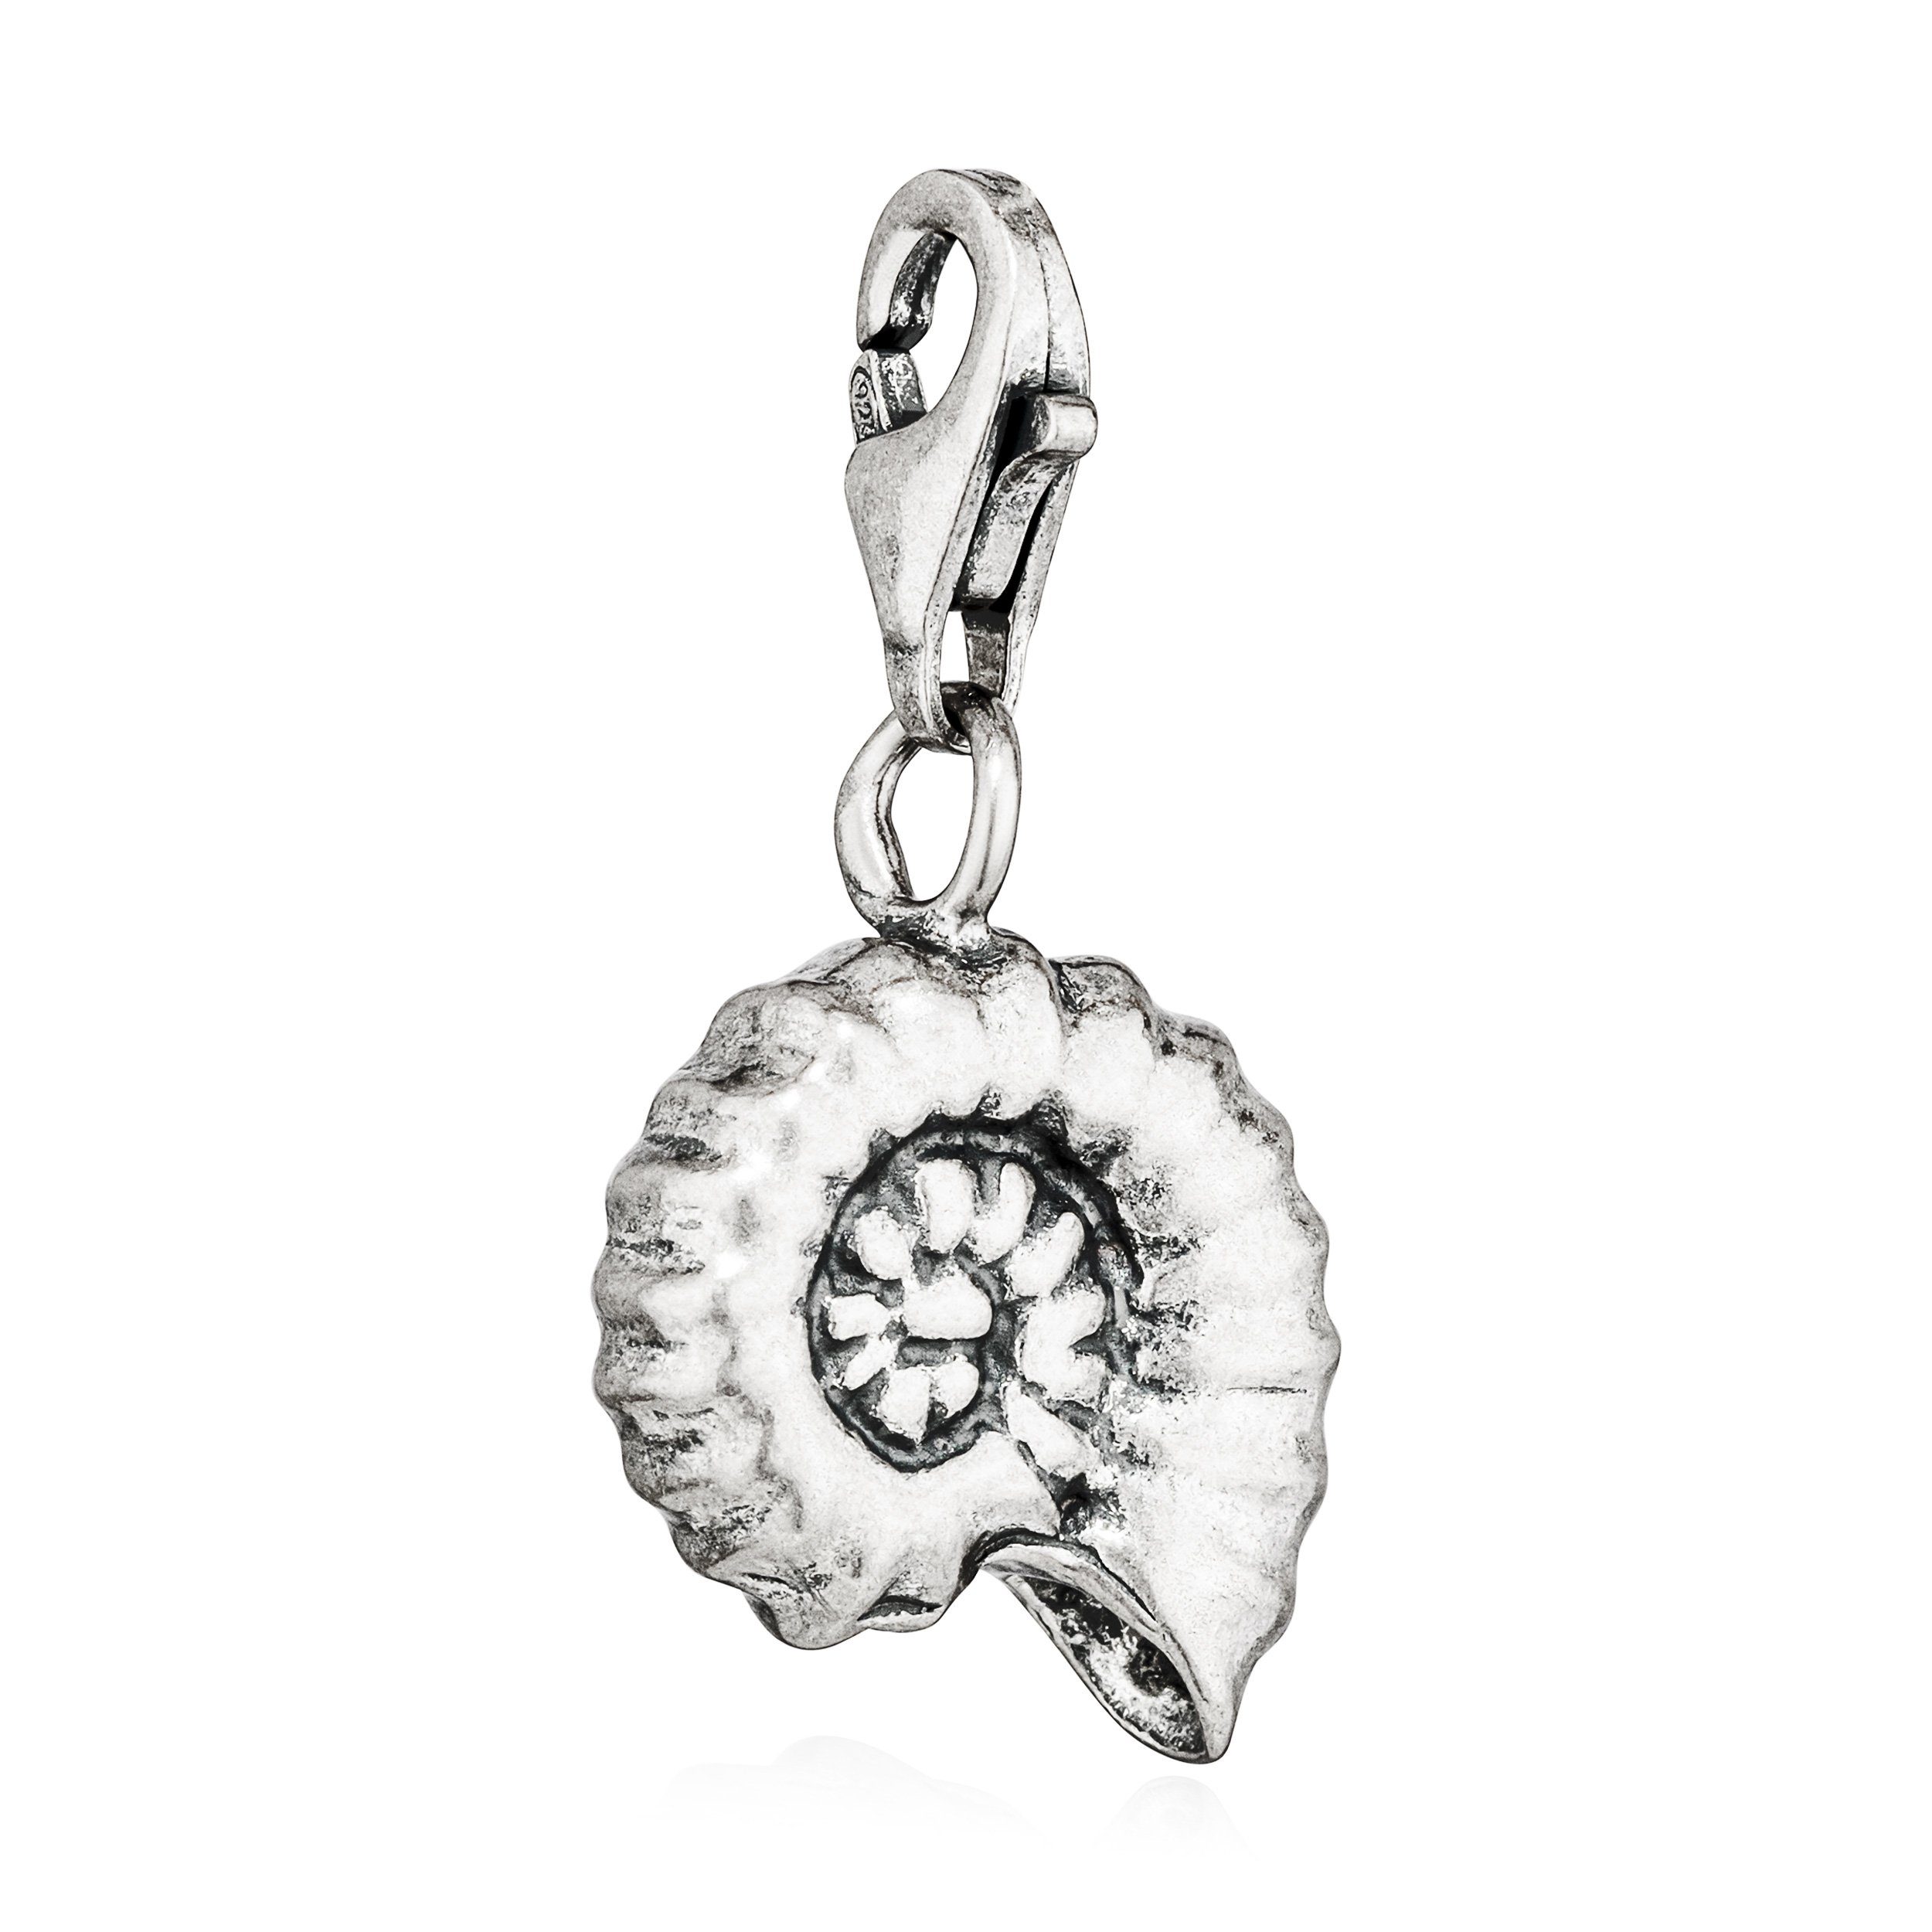 NKlaus Kettenanhänger Charm-Anhänger Fossil Ammonit 925 Silber antik 12x13mm Silberanhänger